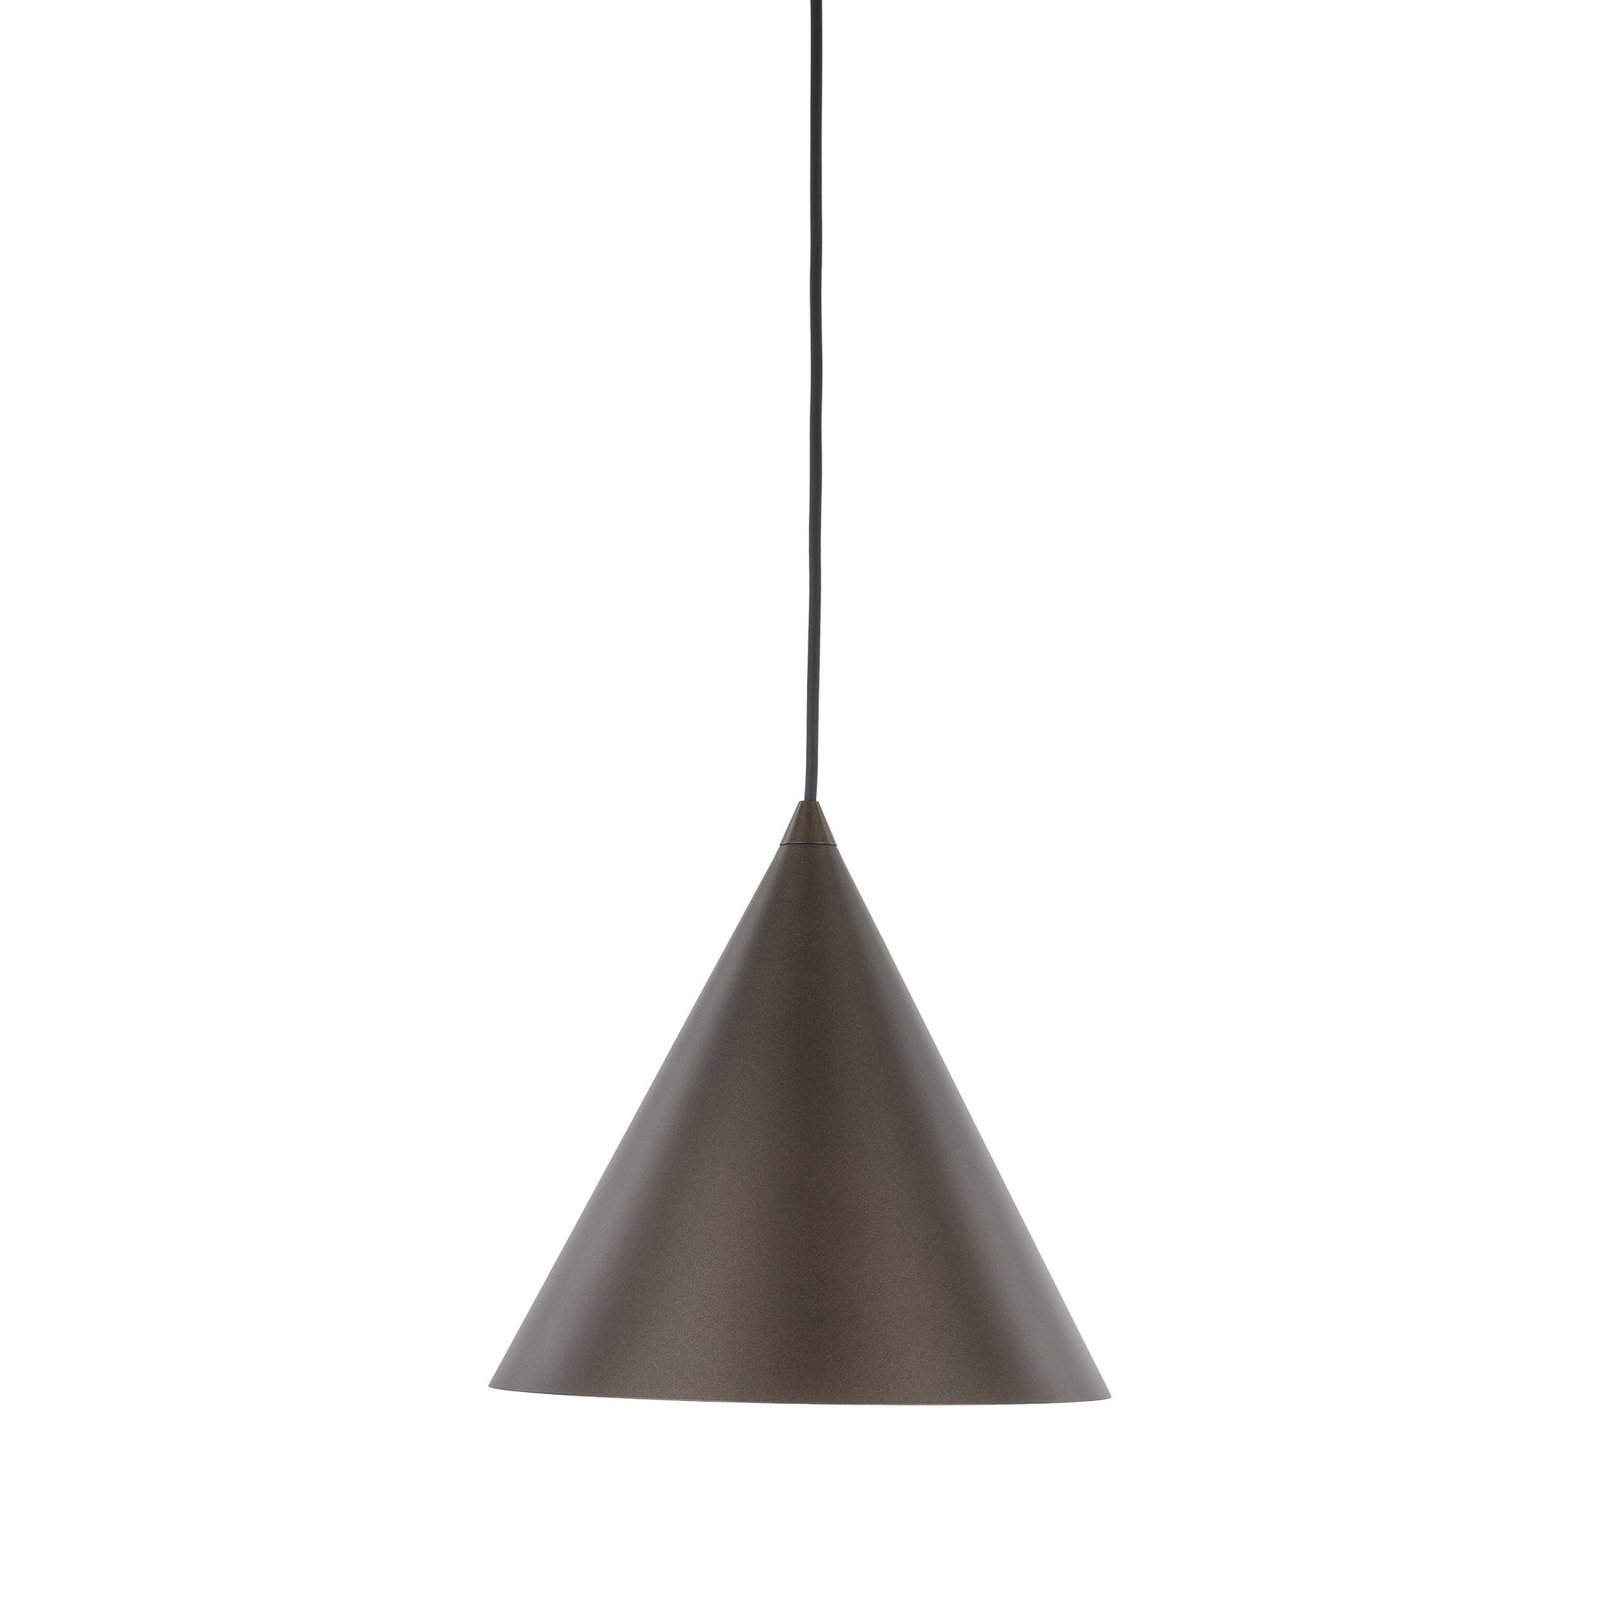 Lampa wisząca Cono, 1-punktowa, Ø 25 cm, kolor brązowy